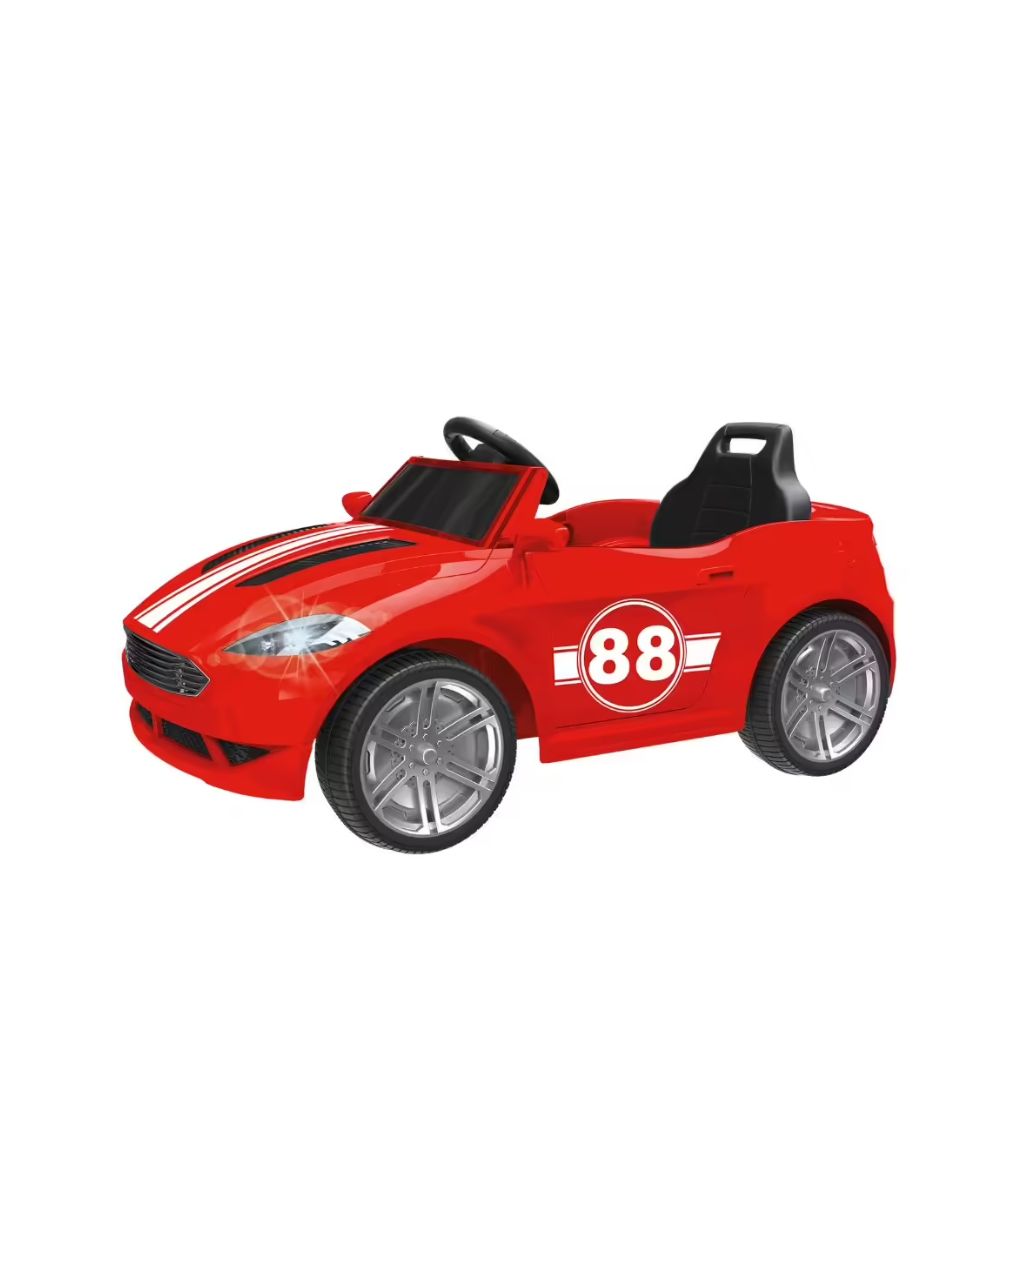 Sun & sport - παιδικό ηλεκτροκίνητο σπορ αυτοκίνητο 6v με τηλεχειριστήριο prg00233